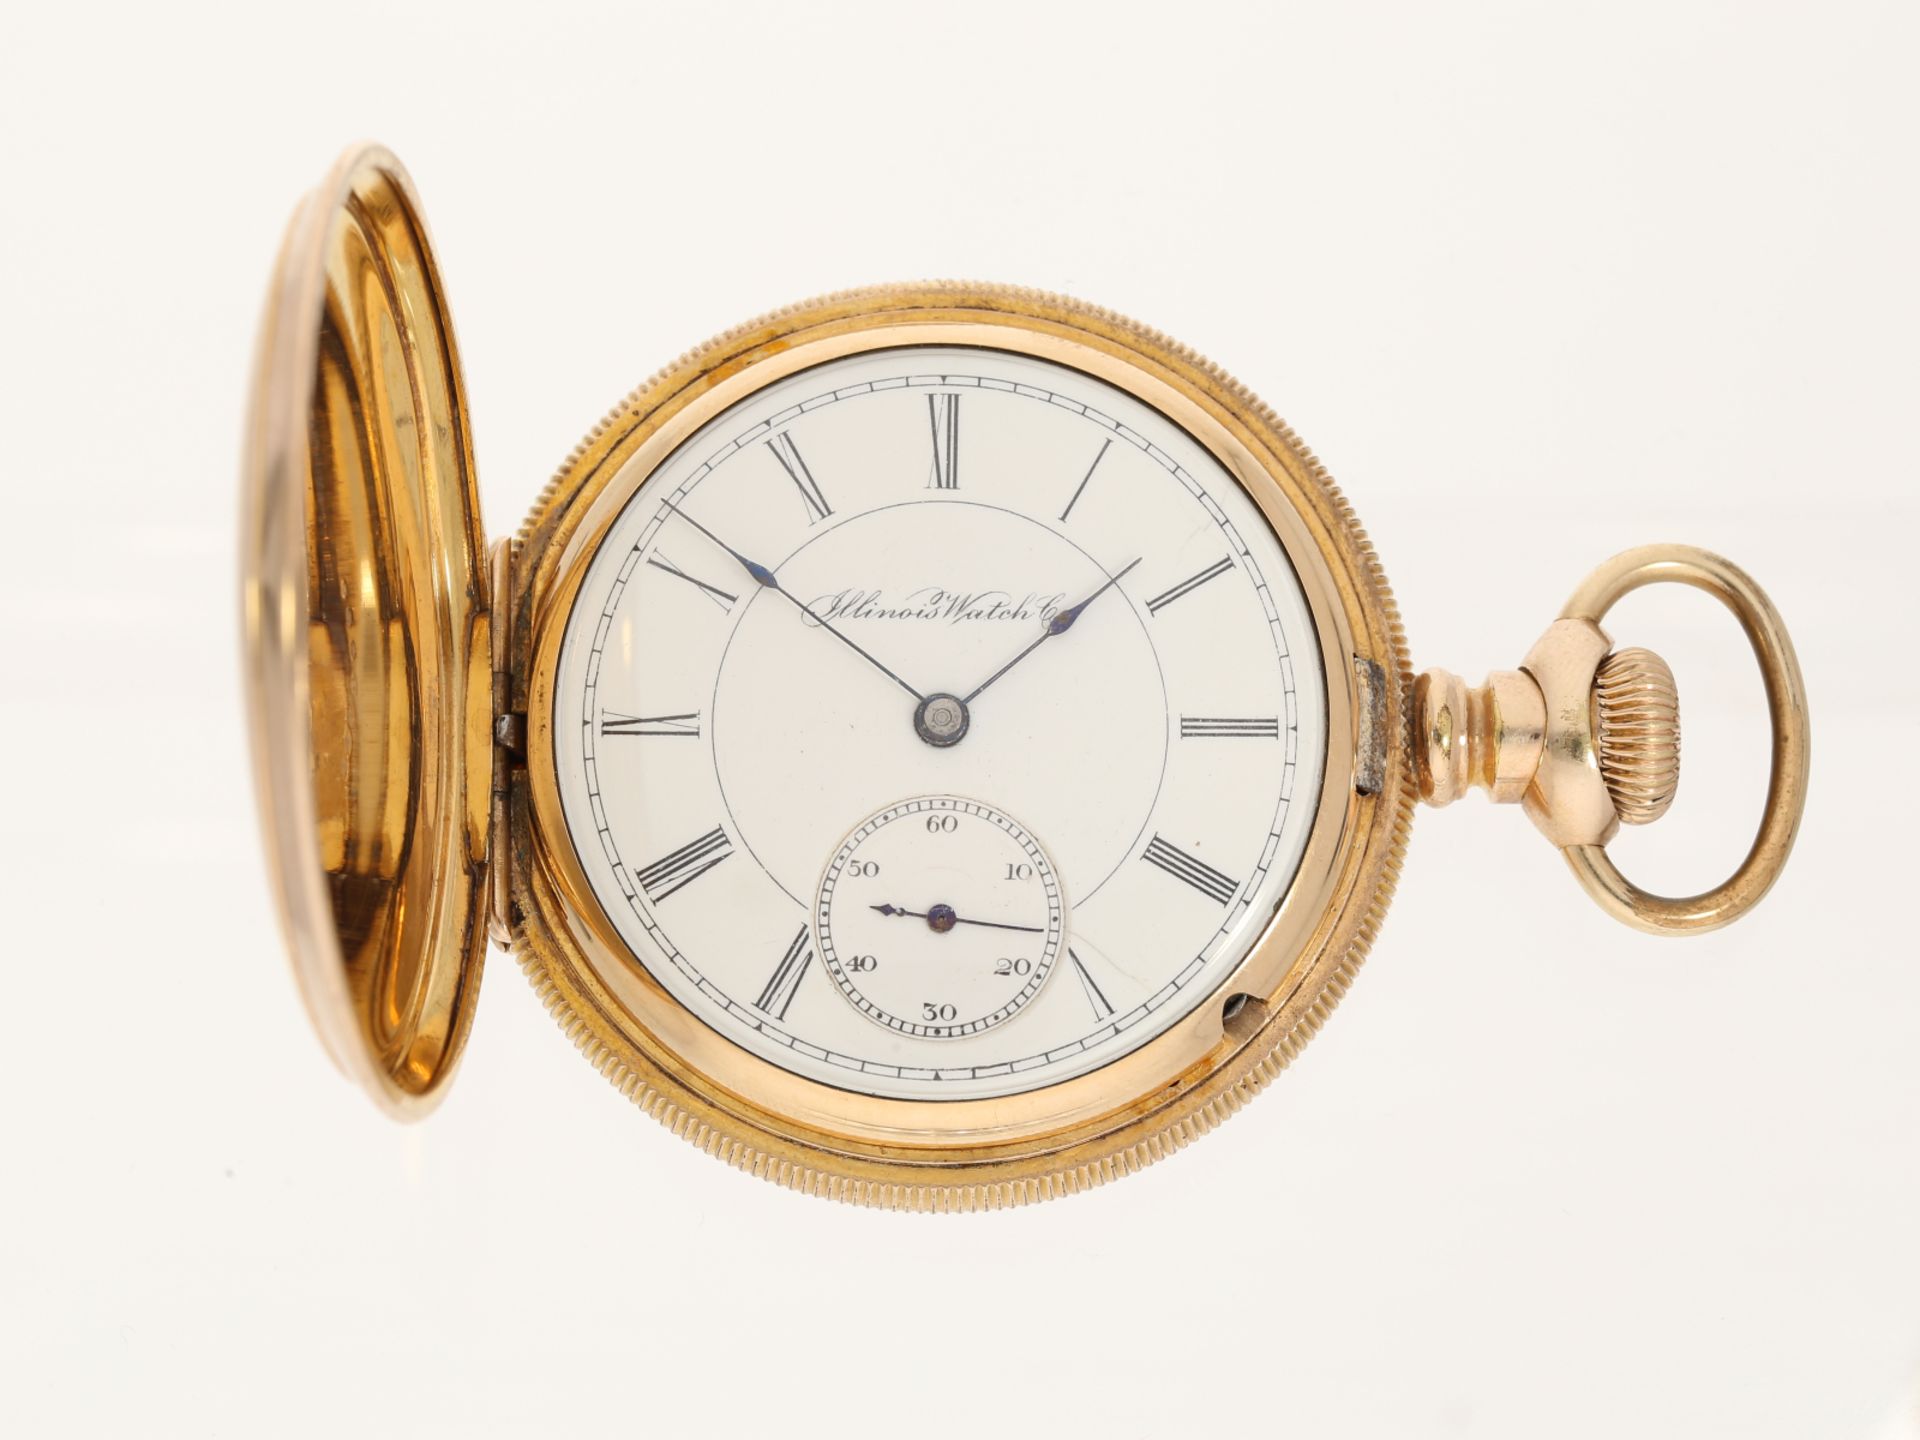 Dekorative amerikanische Taschenuhr "Illinois Watch" vergoldet - Bild 2 aus 6